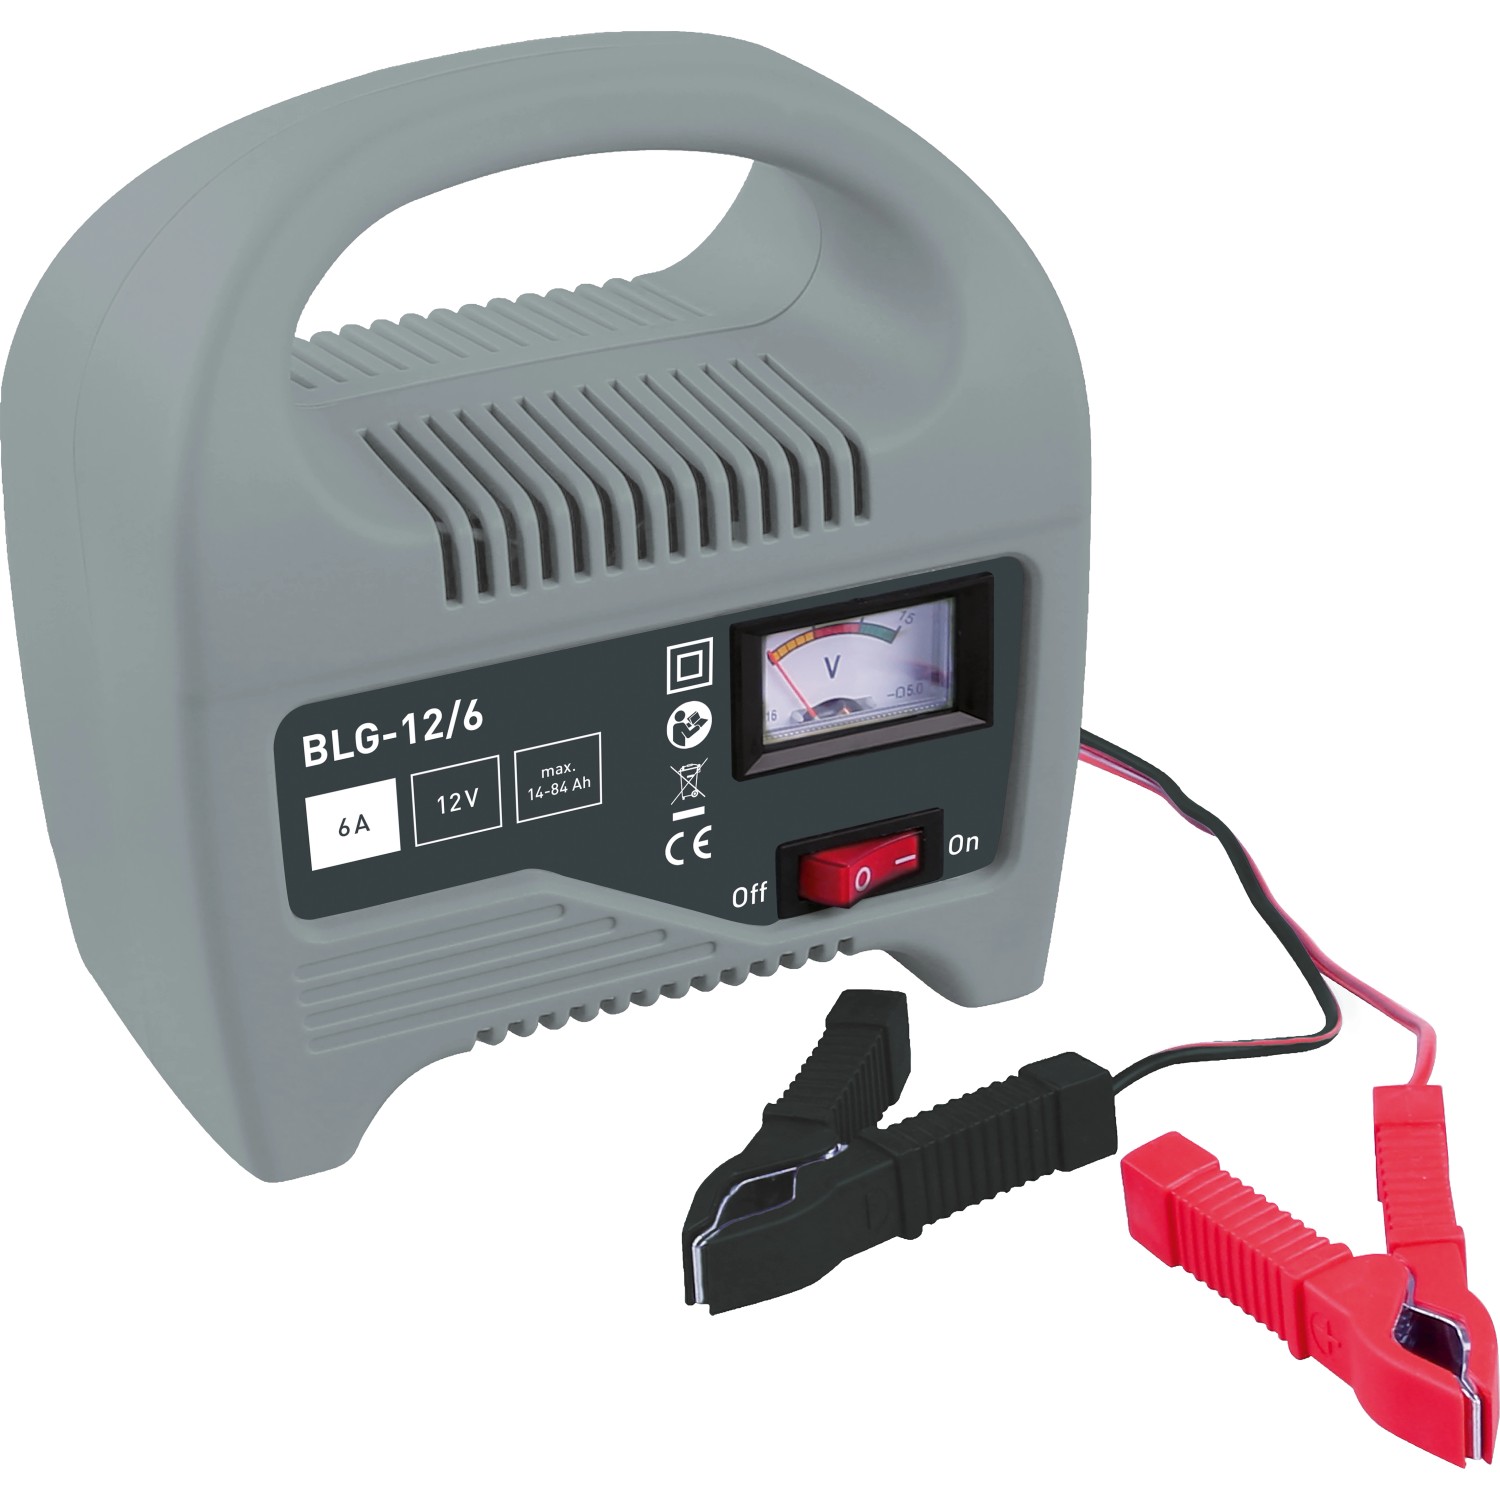 Batterieladegerät BLG-12/6 / 6 A kaufen bei OBI